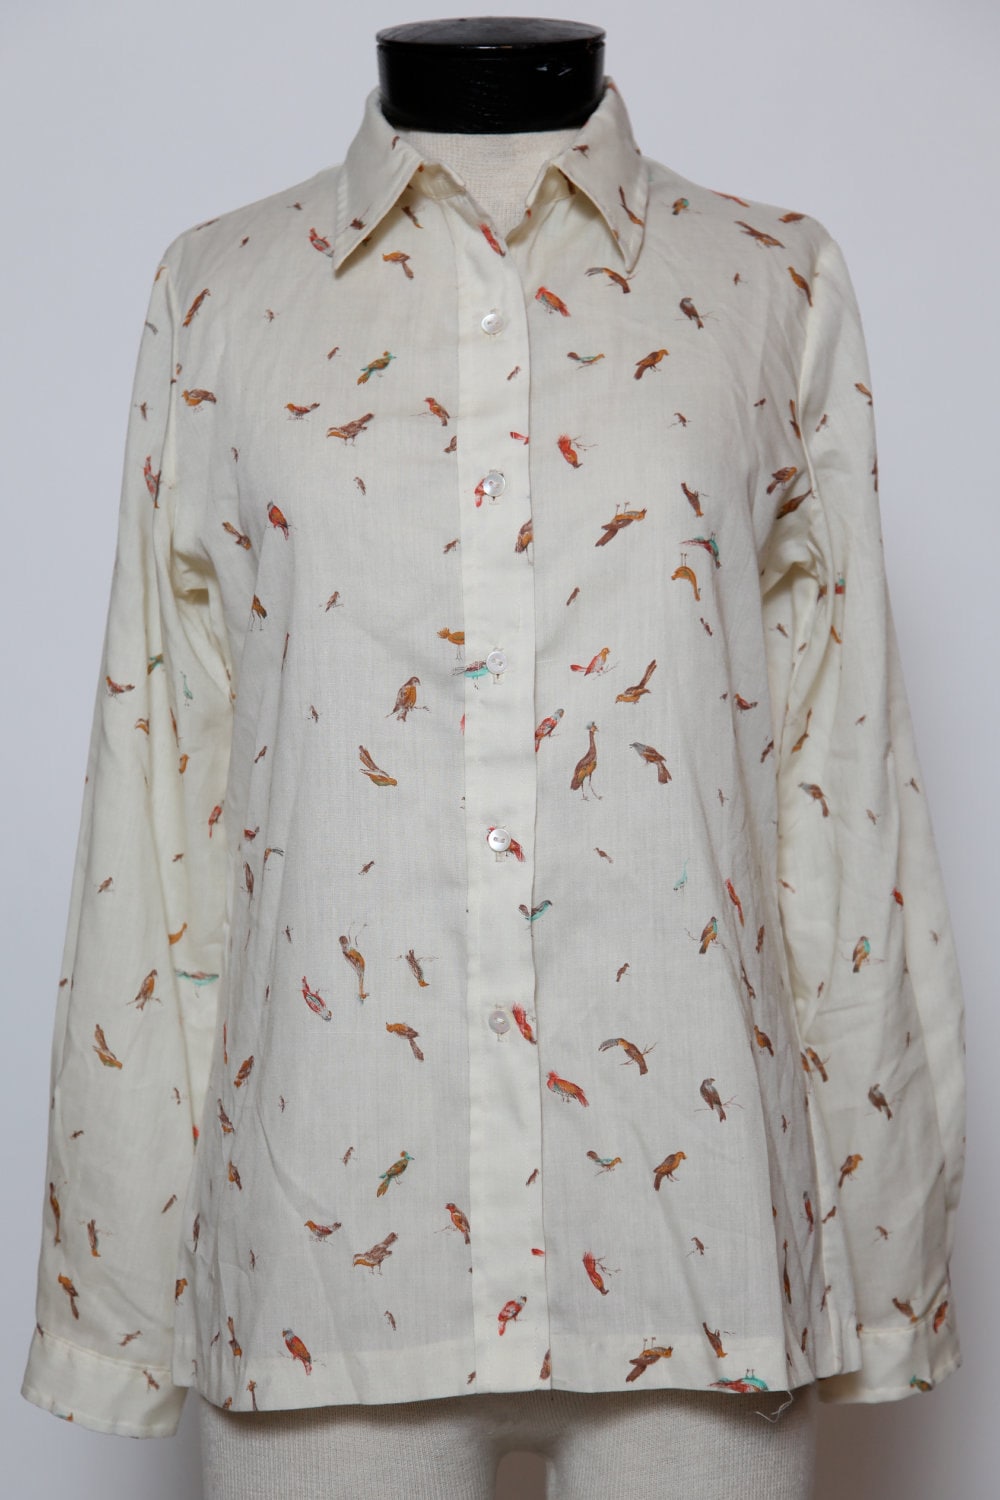 ladies vintage bird shirt by oldskoolmarm on Etsy